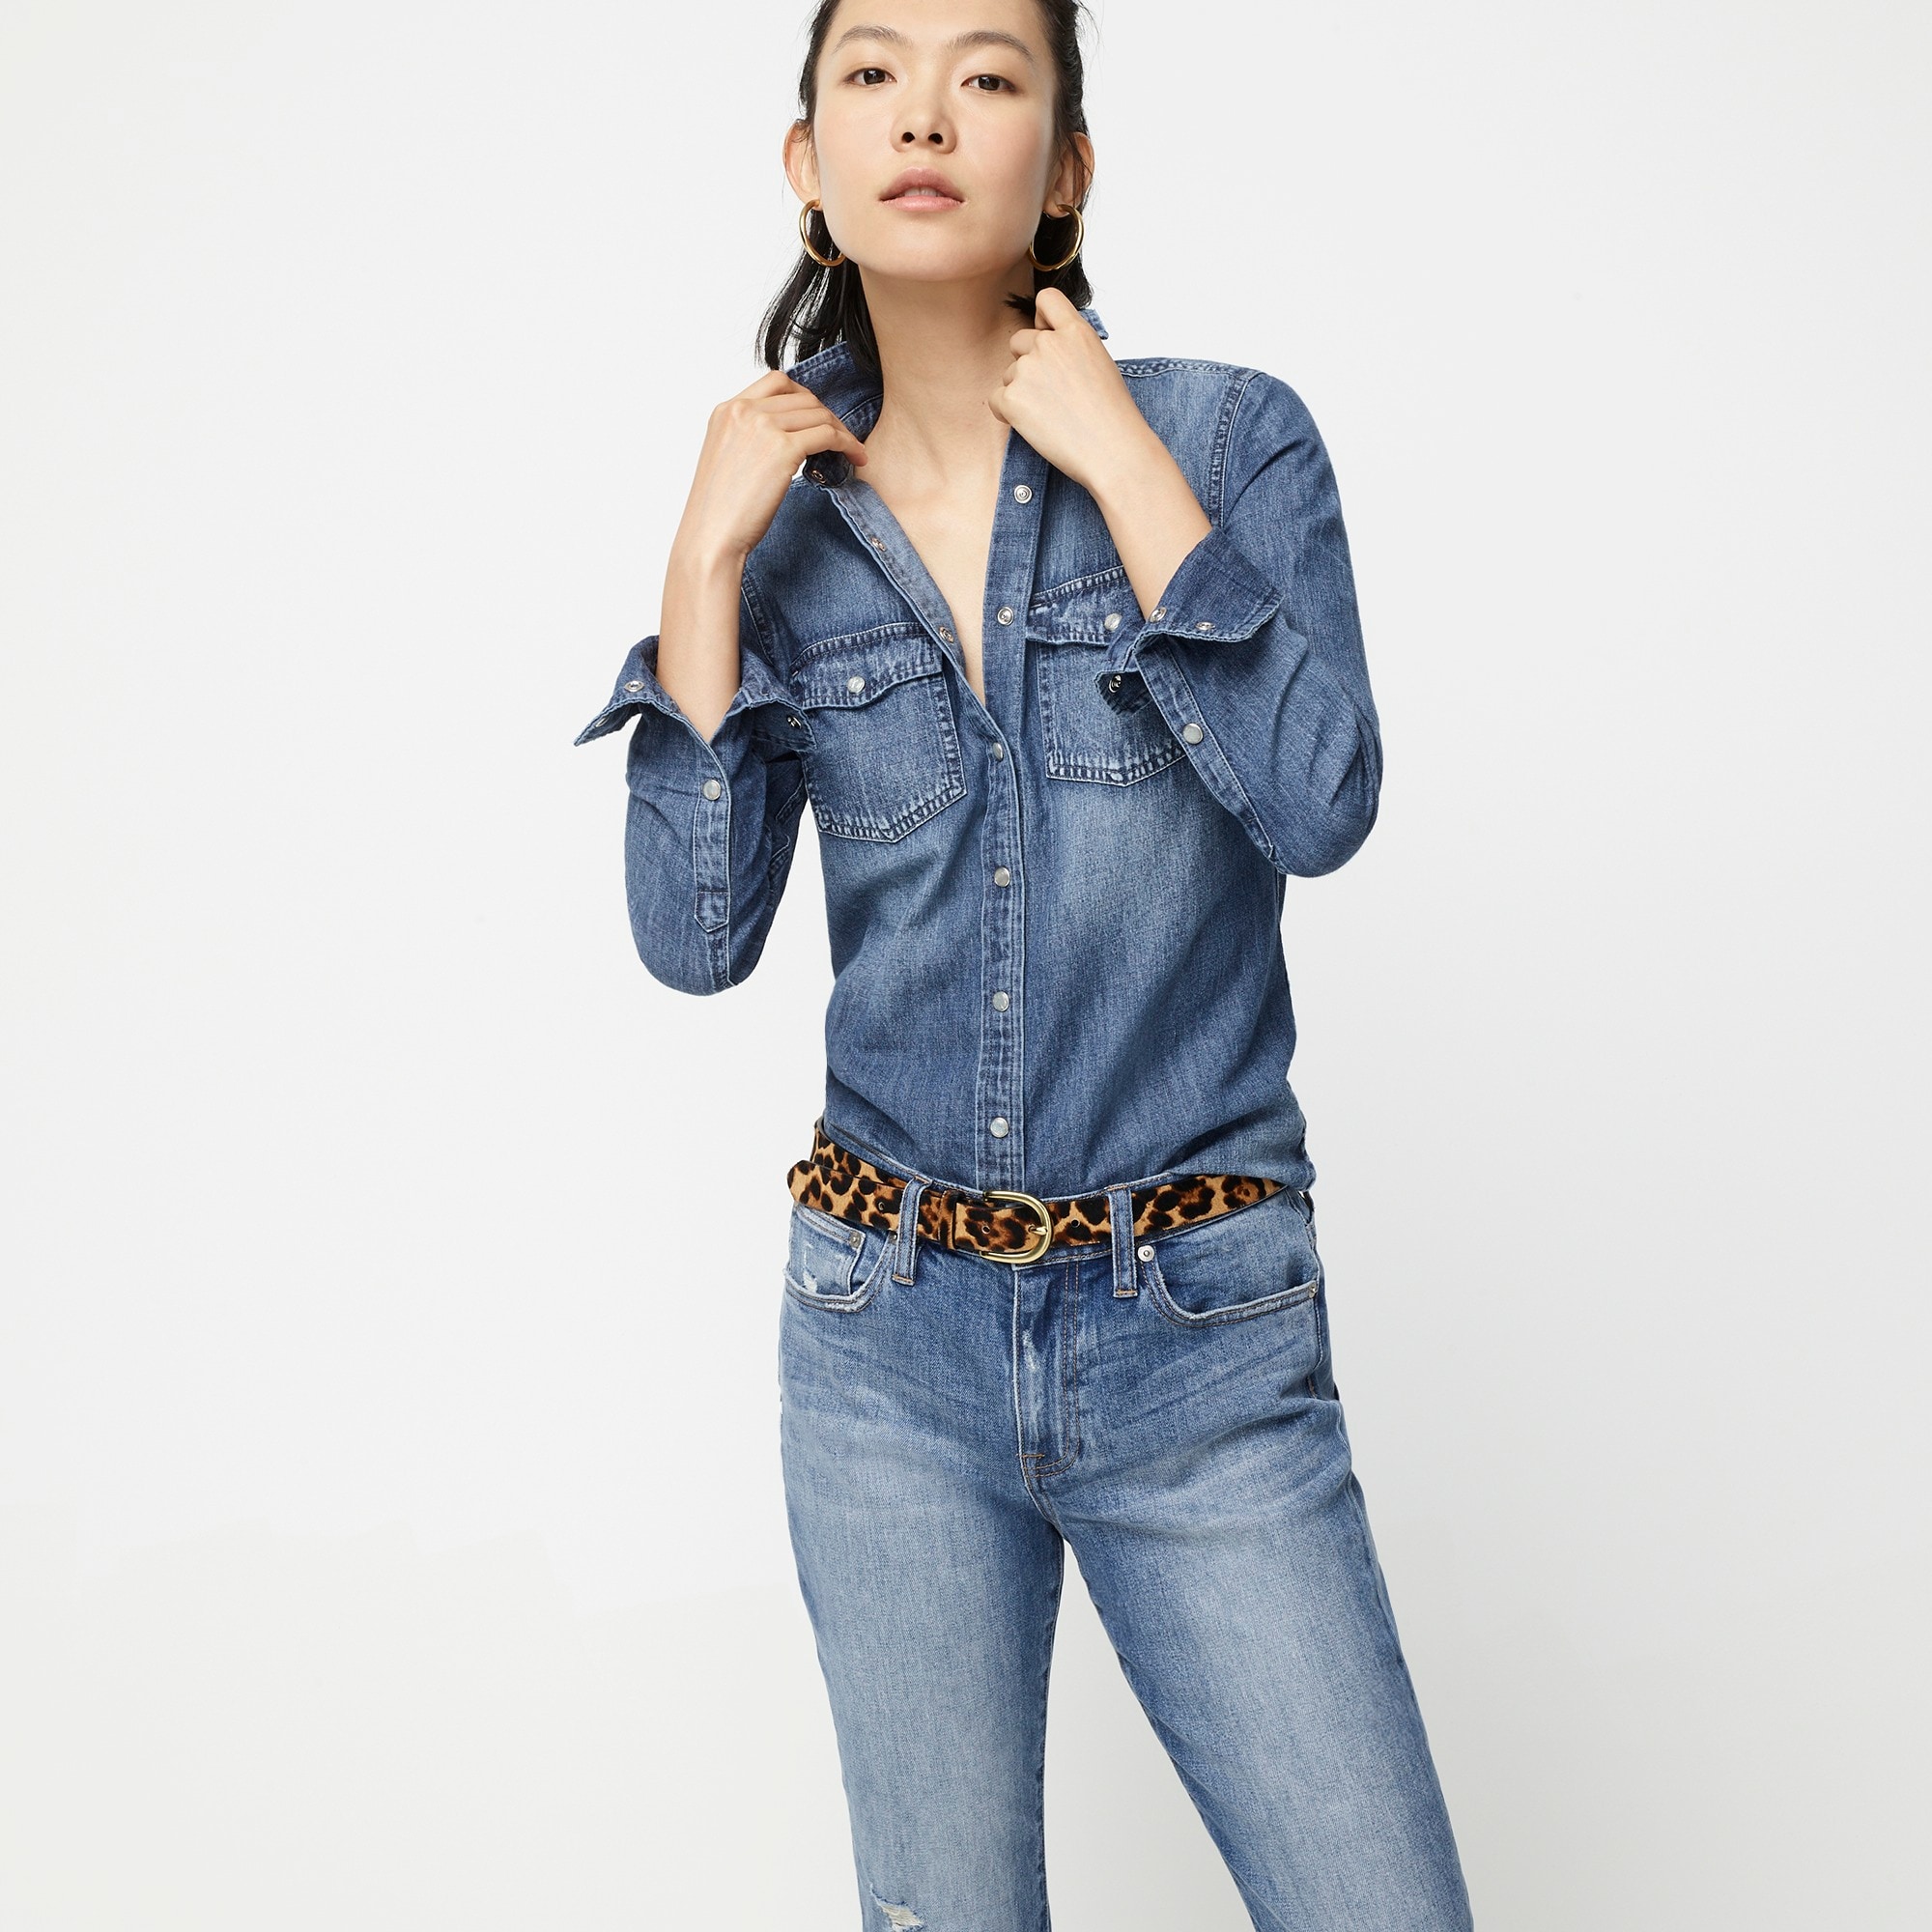 jeans shirt for girl online